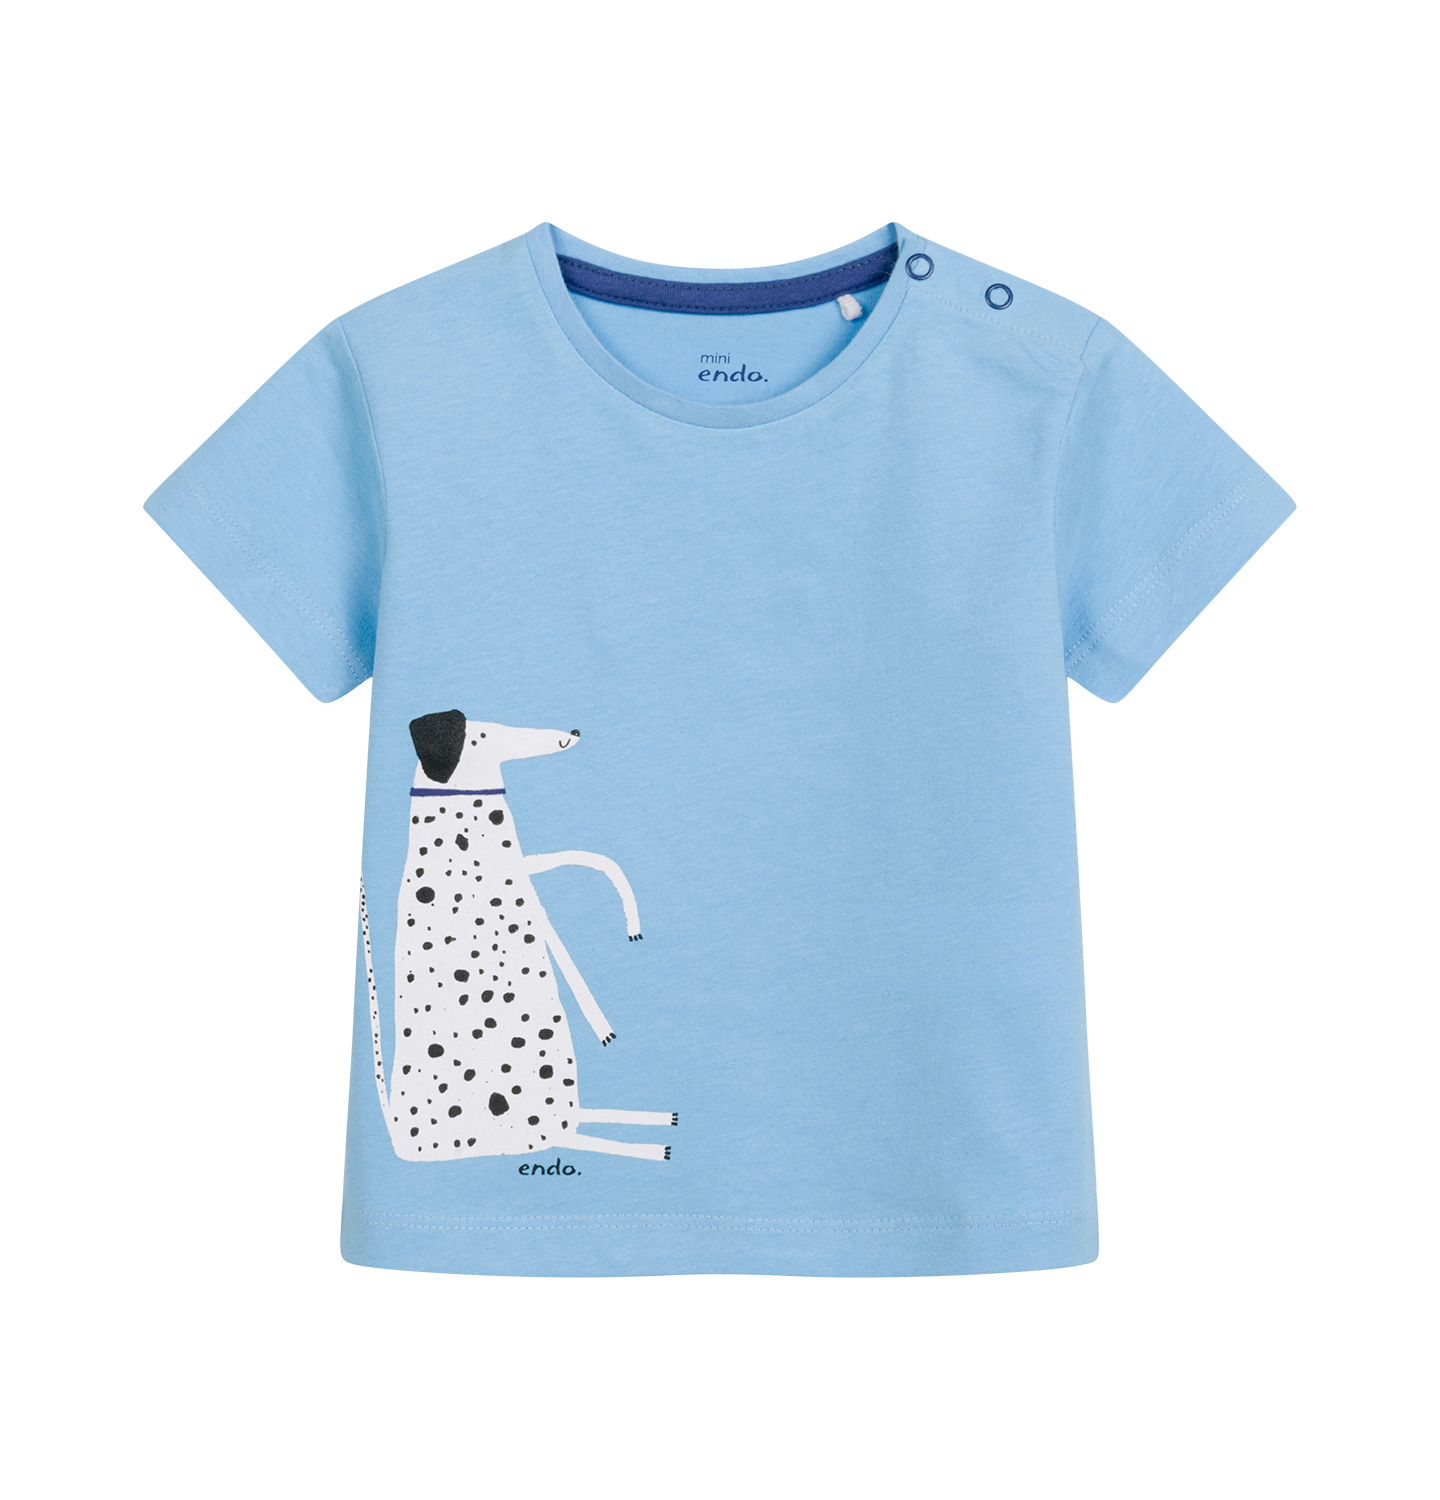 ubranka dla niemowlaka na wycieczkę - koszulka z krótkim rękawem